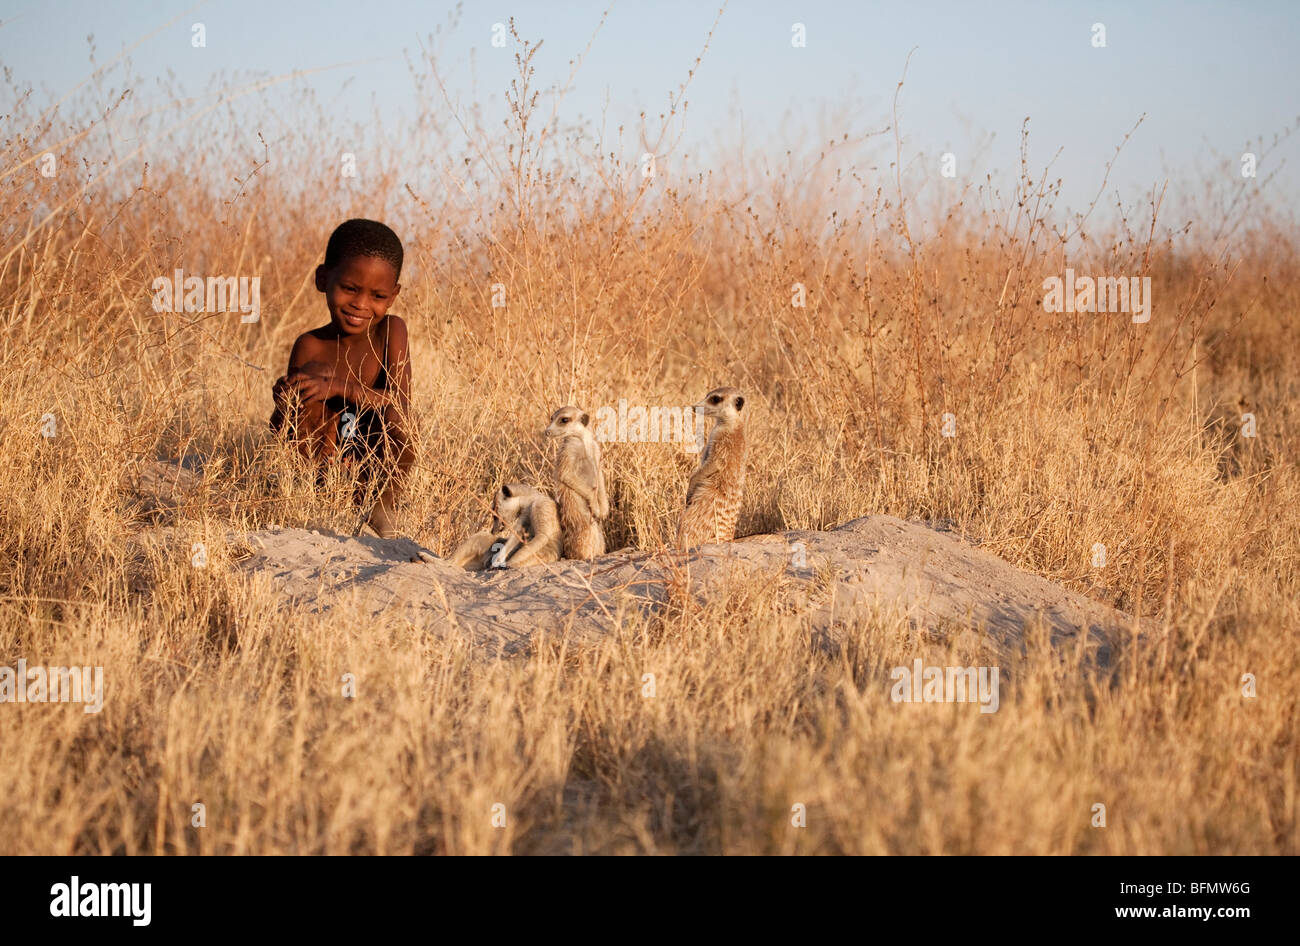 Il Botswana, Makgadikgadi, un bambino boscimane orologi una famiglia di meerkats dall ingresso alla loro burrow. Foto Stock